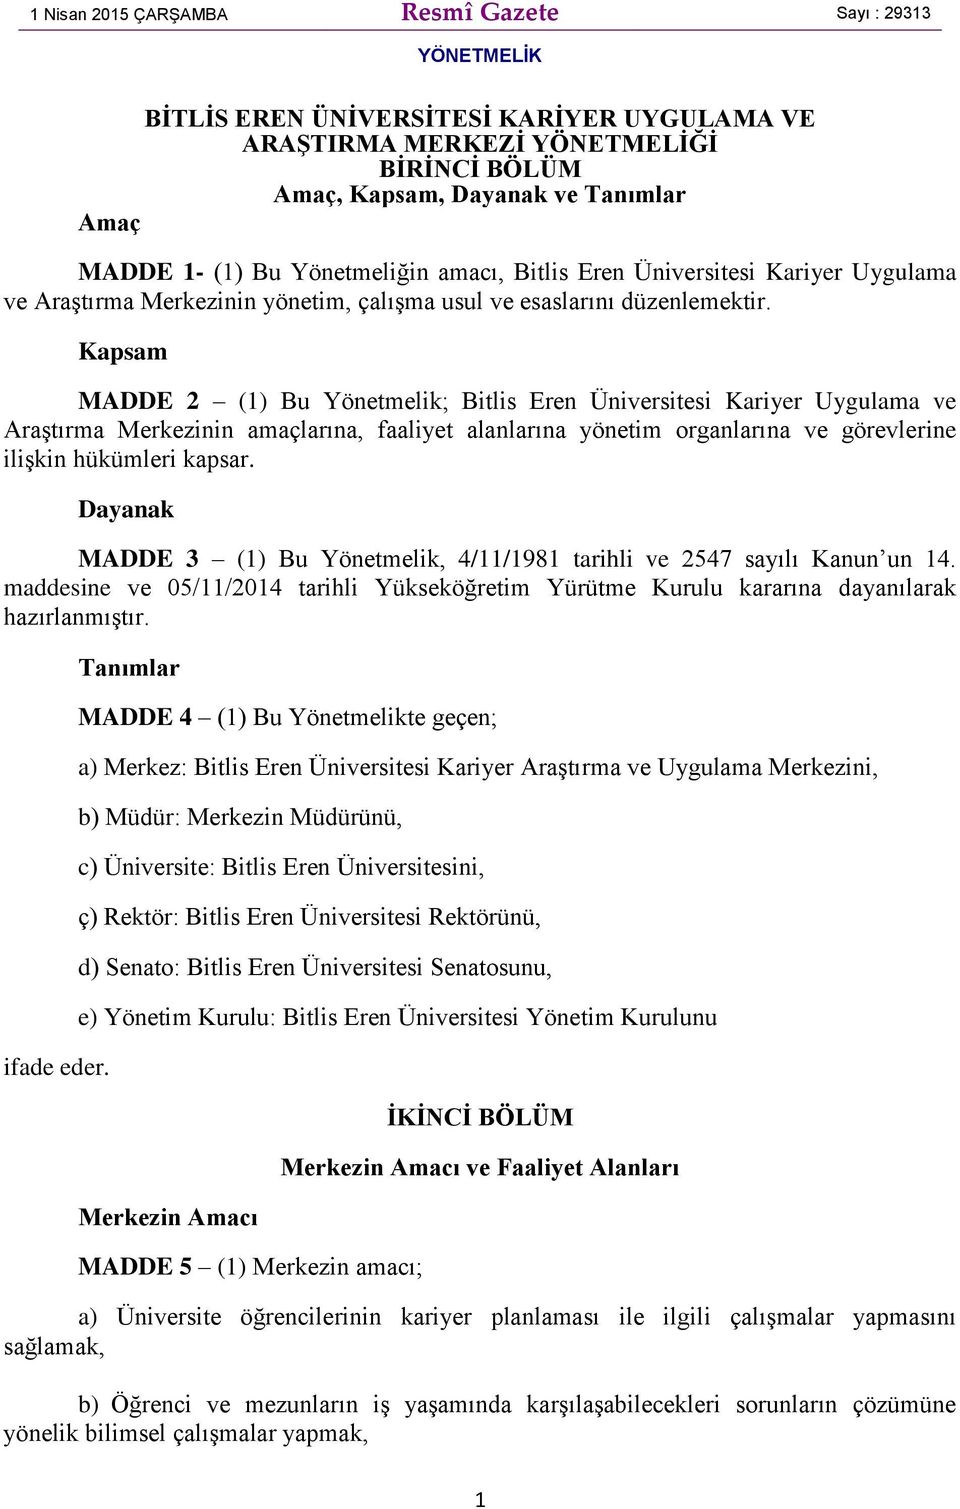 Kapsam MADDE 2 (1) Bu Yönetmelik; Bitlis Eren Üniversitesi Kariyer Uygulama ve Araştırma Merkezinin amaçlarına, faaliyet alanlarına yönetim organlarına ve görevlerine ilişkin hükümleri kapsar.